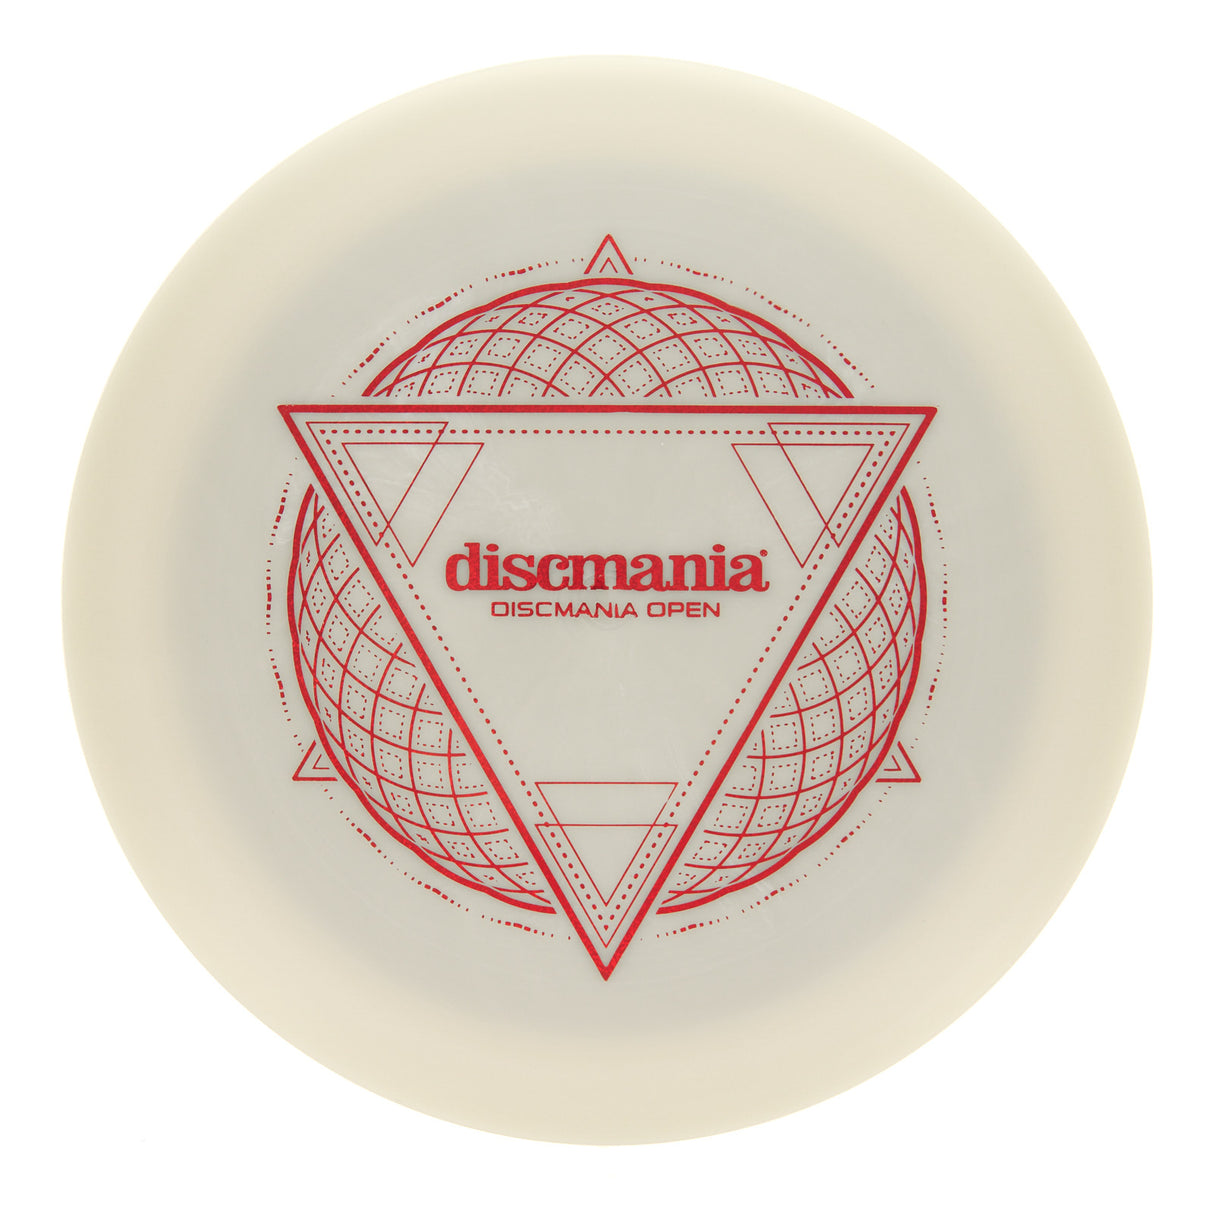 Discmania Enigma - Discmania Open Stamp Neo Lumen 175g | Style 0006